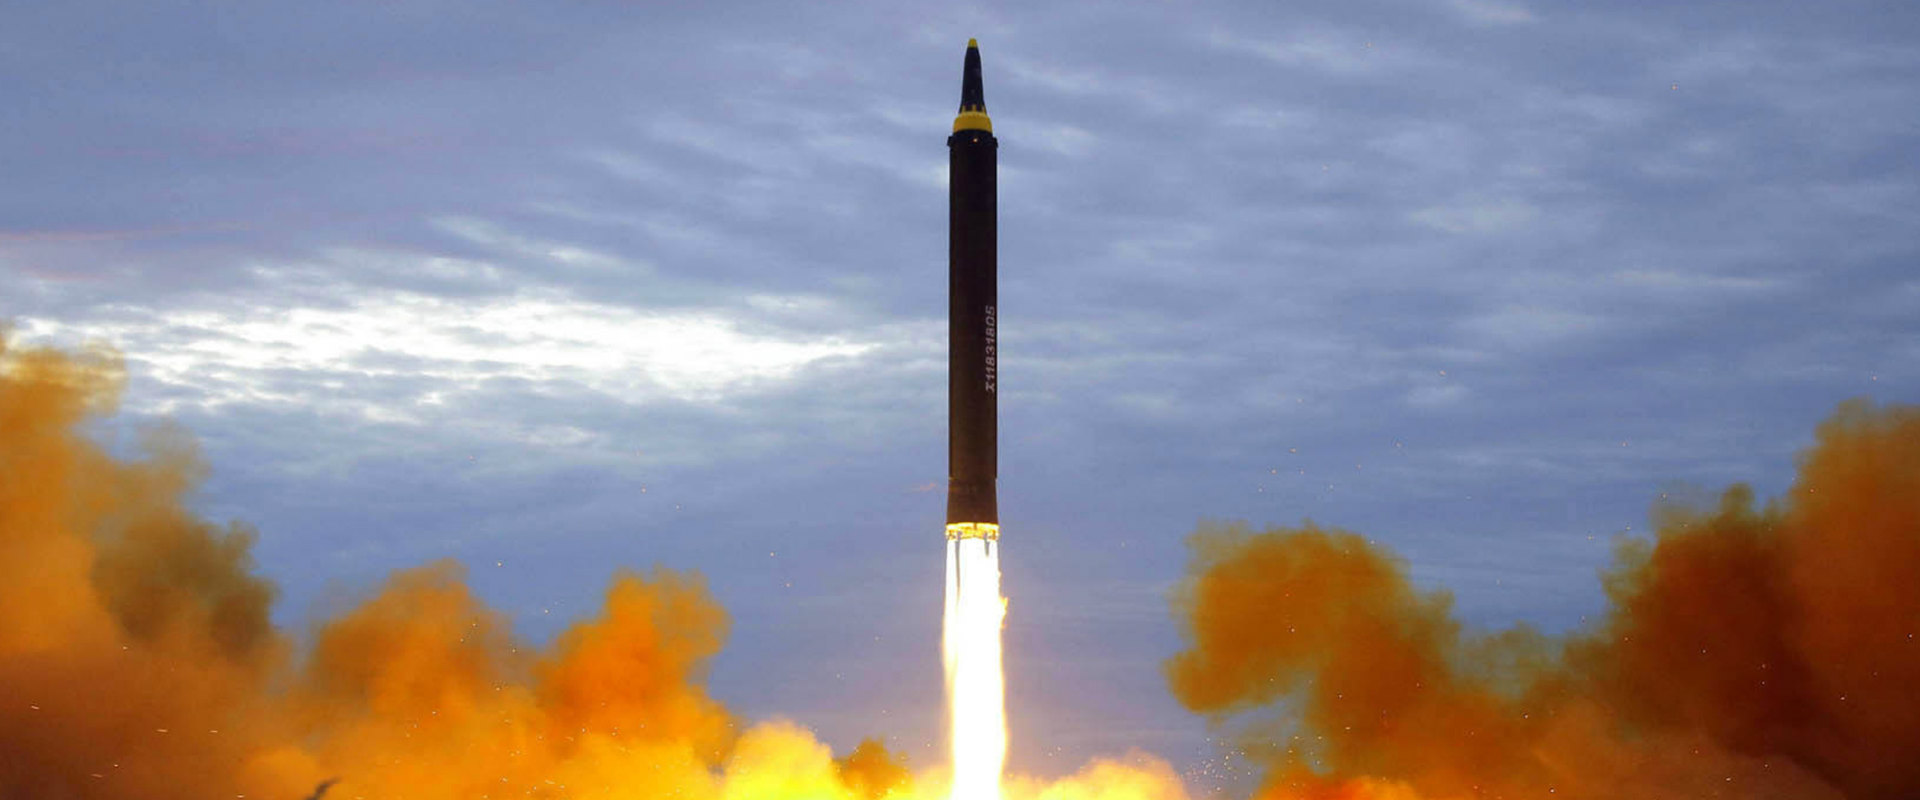 ניסוי בטיל בליסטי שביצעה קוריאה הצפונית, 30 באוגוס